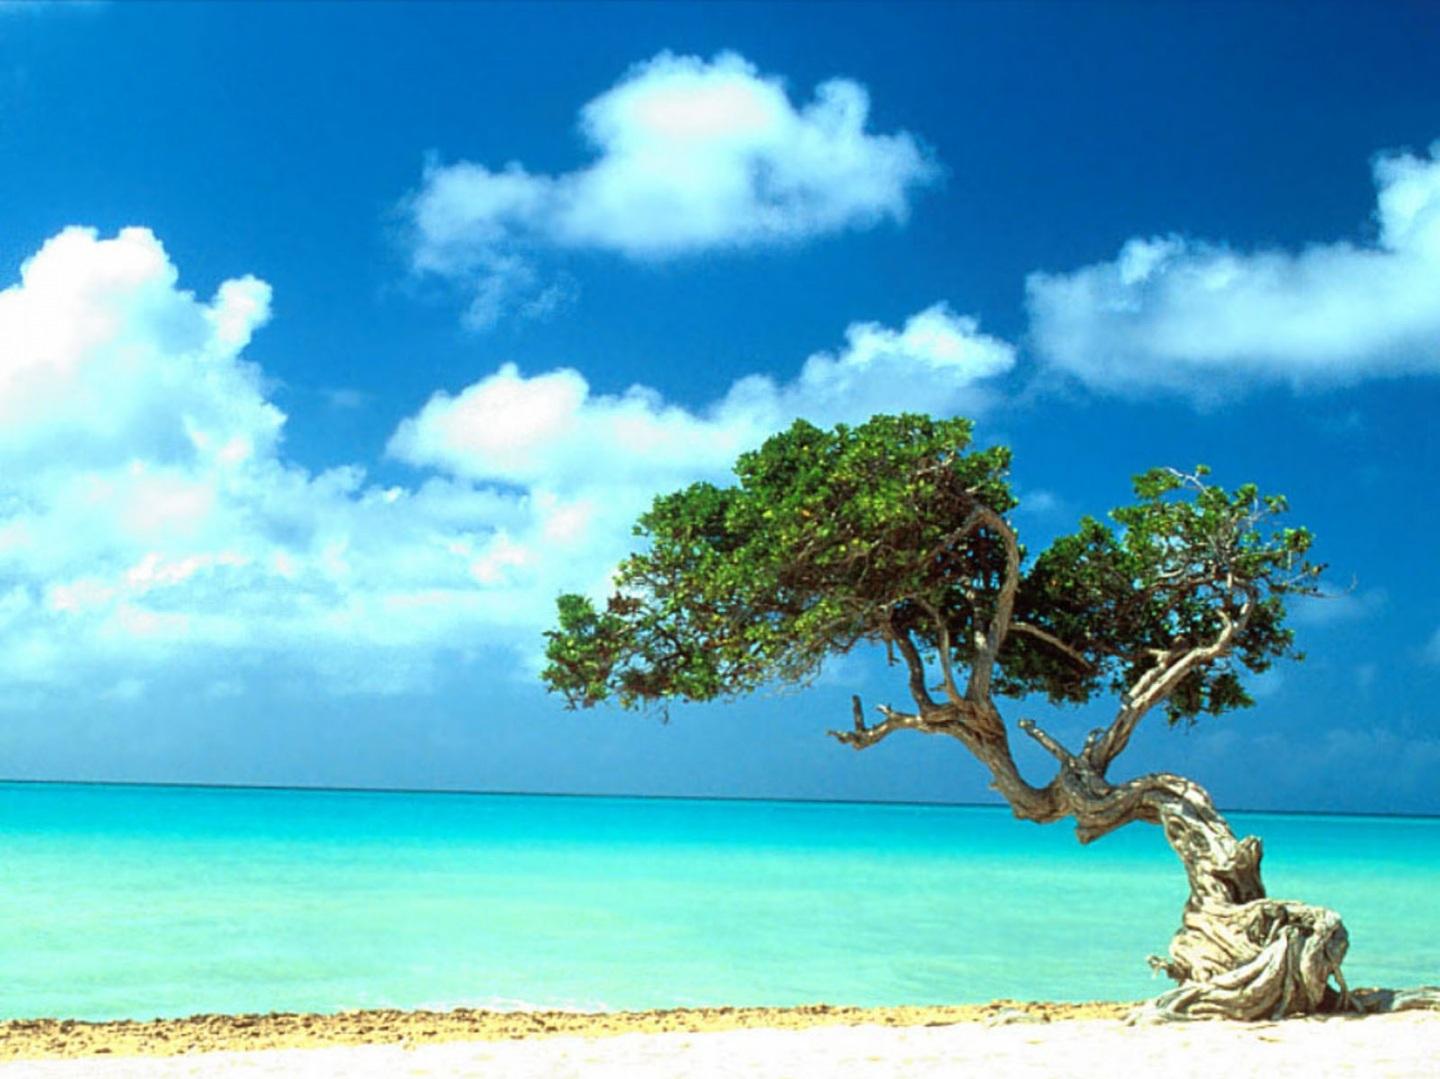 Fondos De Pantallas Y Aruba Beach Lonely Tree HD Travel Im Genes